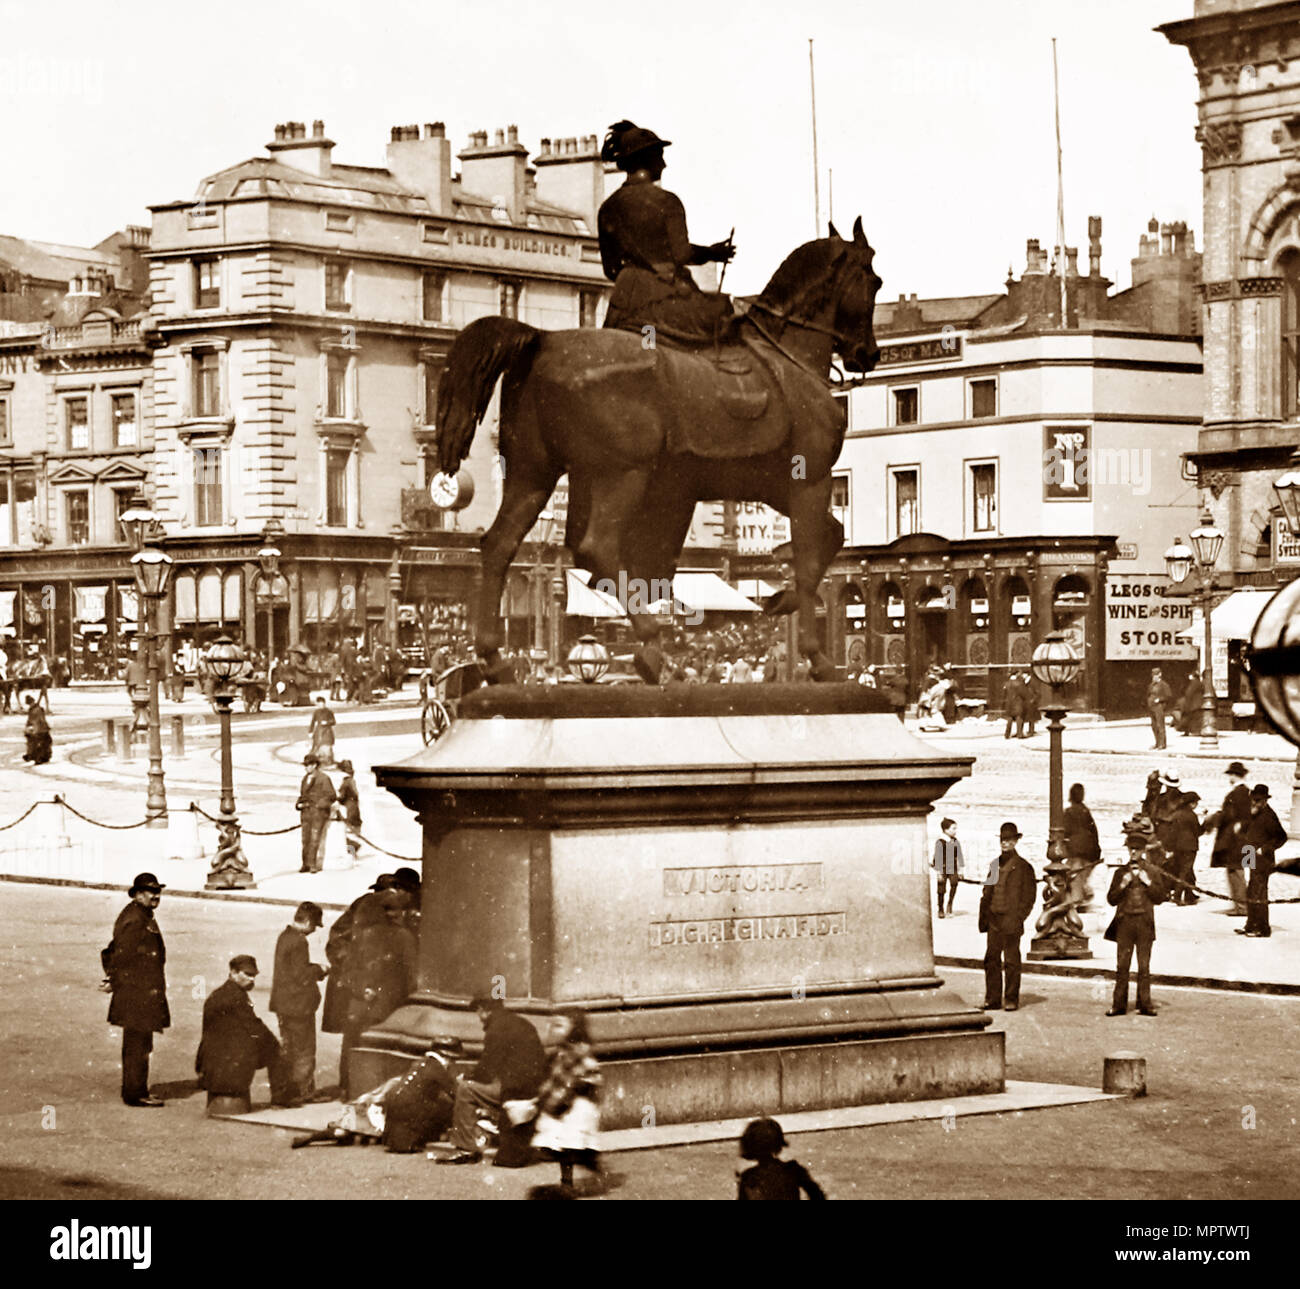 La regina Victoria della statua, Liverpool periodo Vittoriano Foto Stock